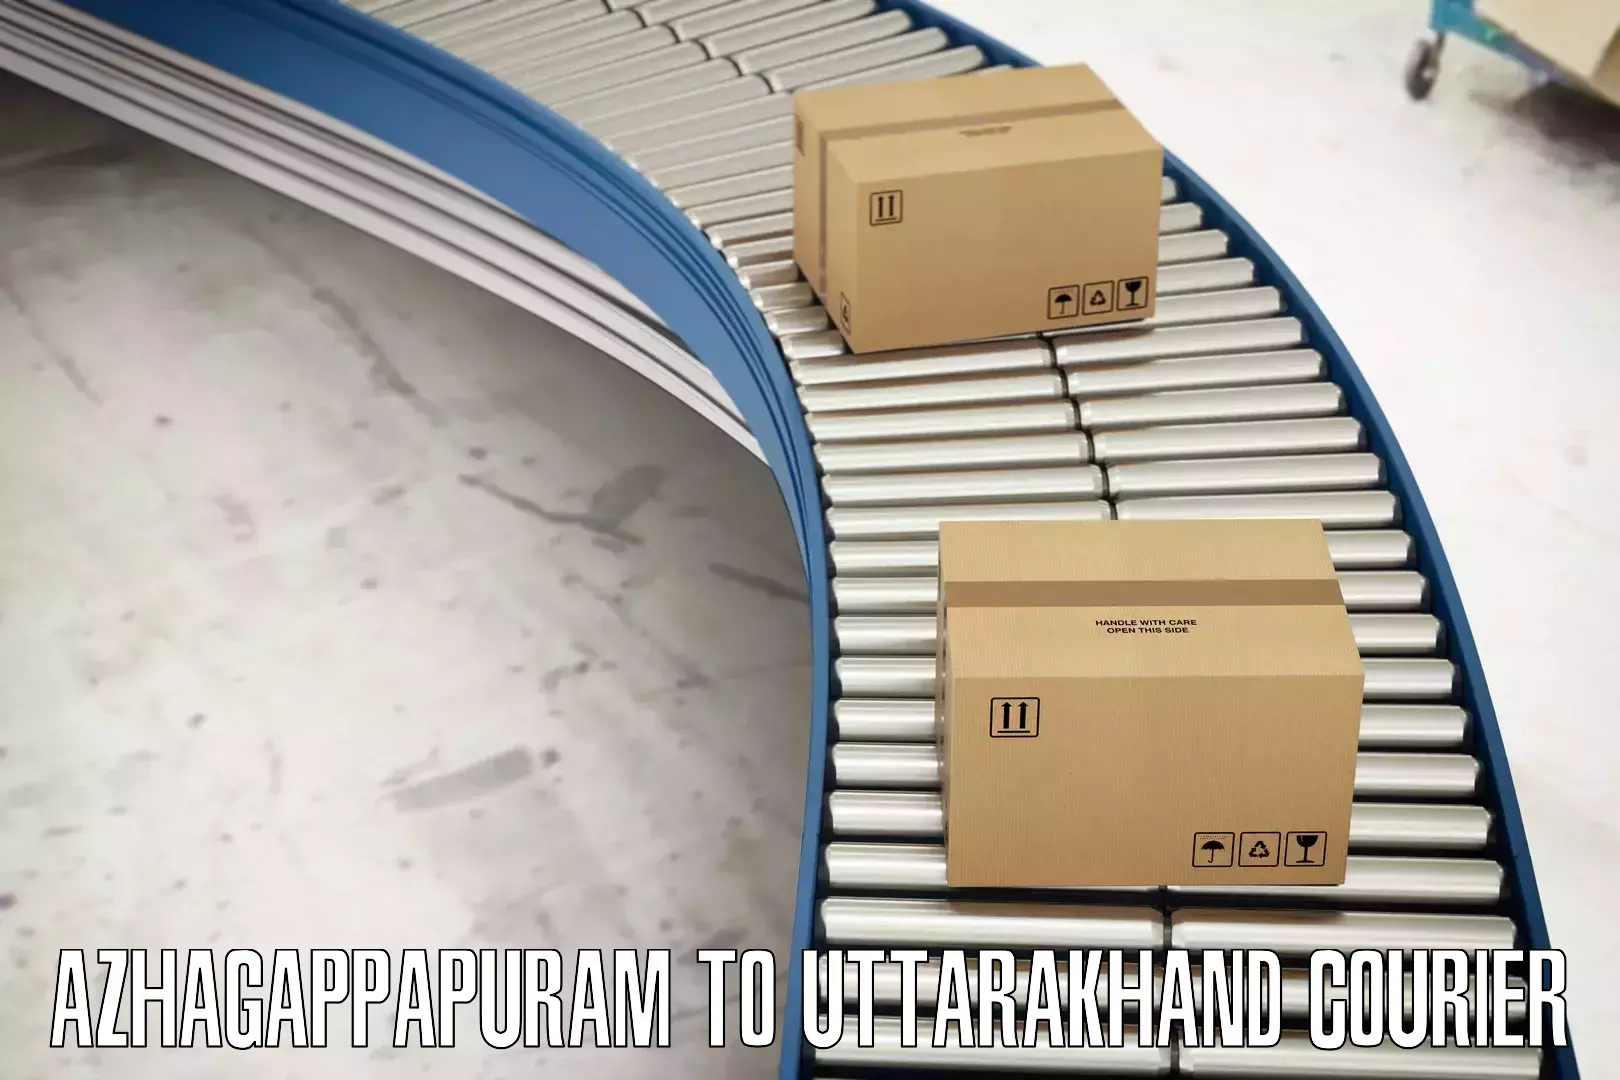 Supply chain delivery Azhagappapuram to Gopeshwar